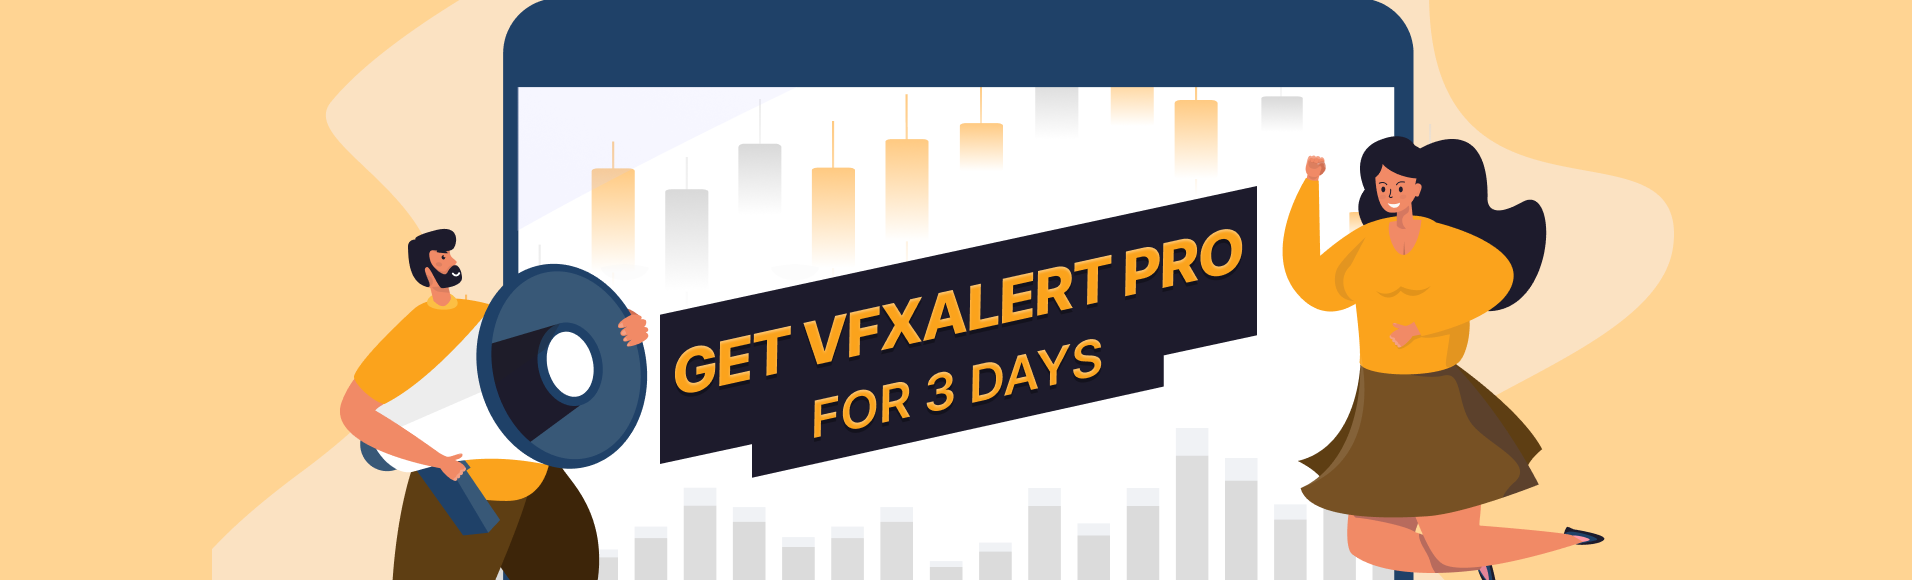 Termes et conditions de la promotion  vfxAlert PRO pendant 3 jours 